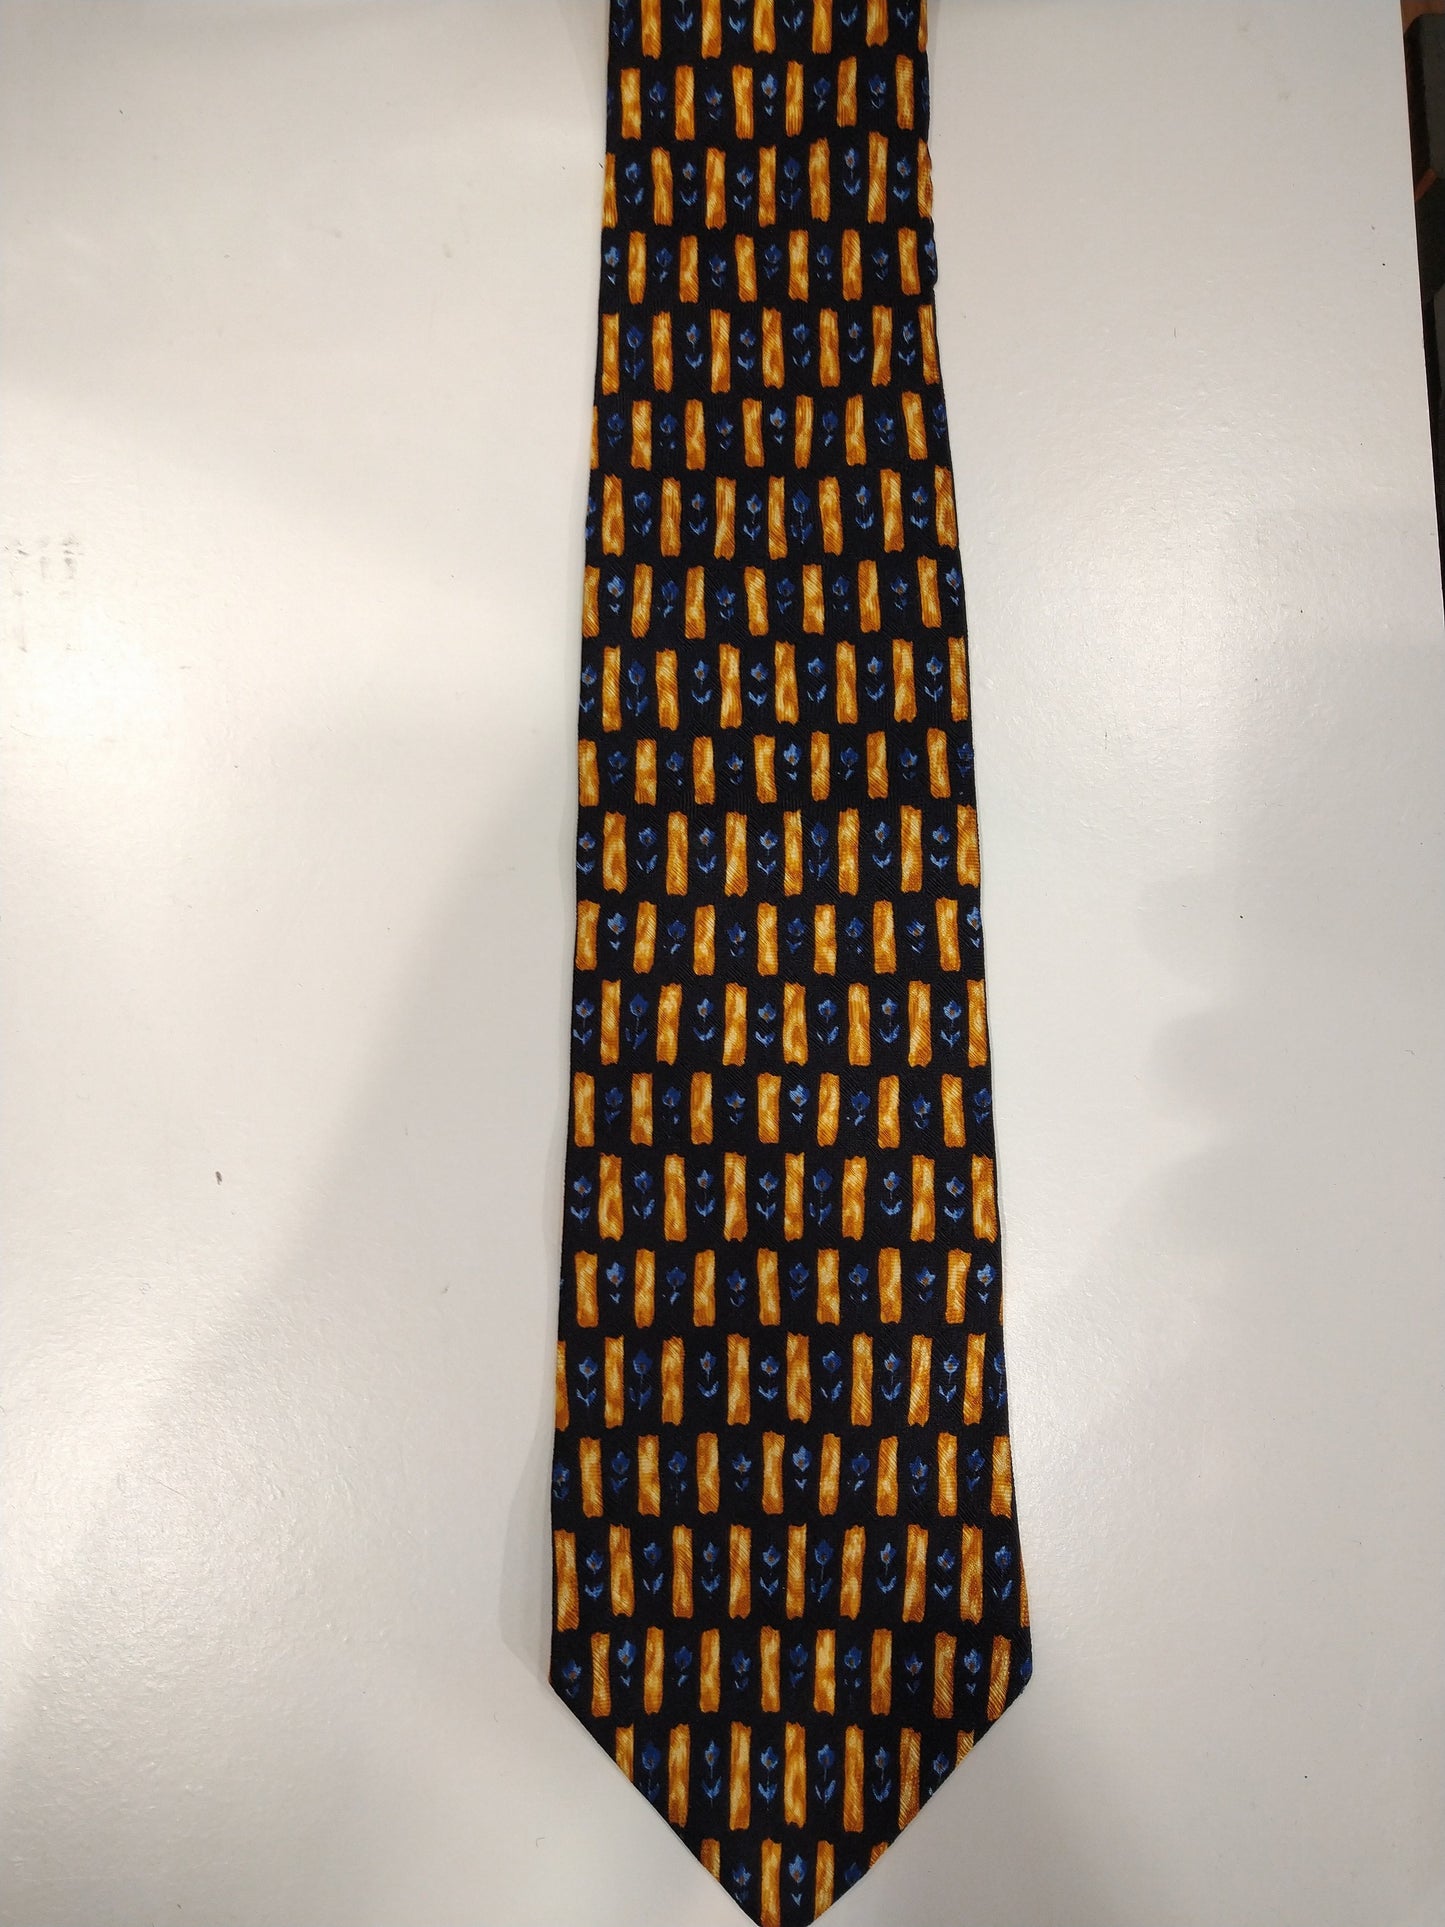 Vintage Hugo Boss zijde stropdas. Blauw / zwart / geel motief.